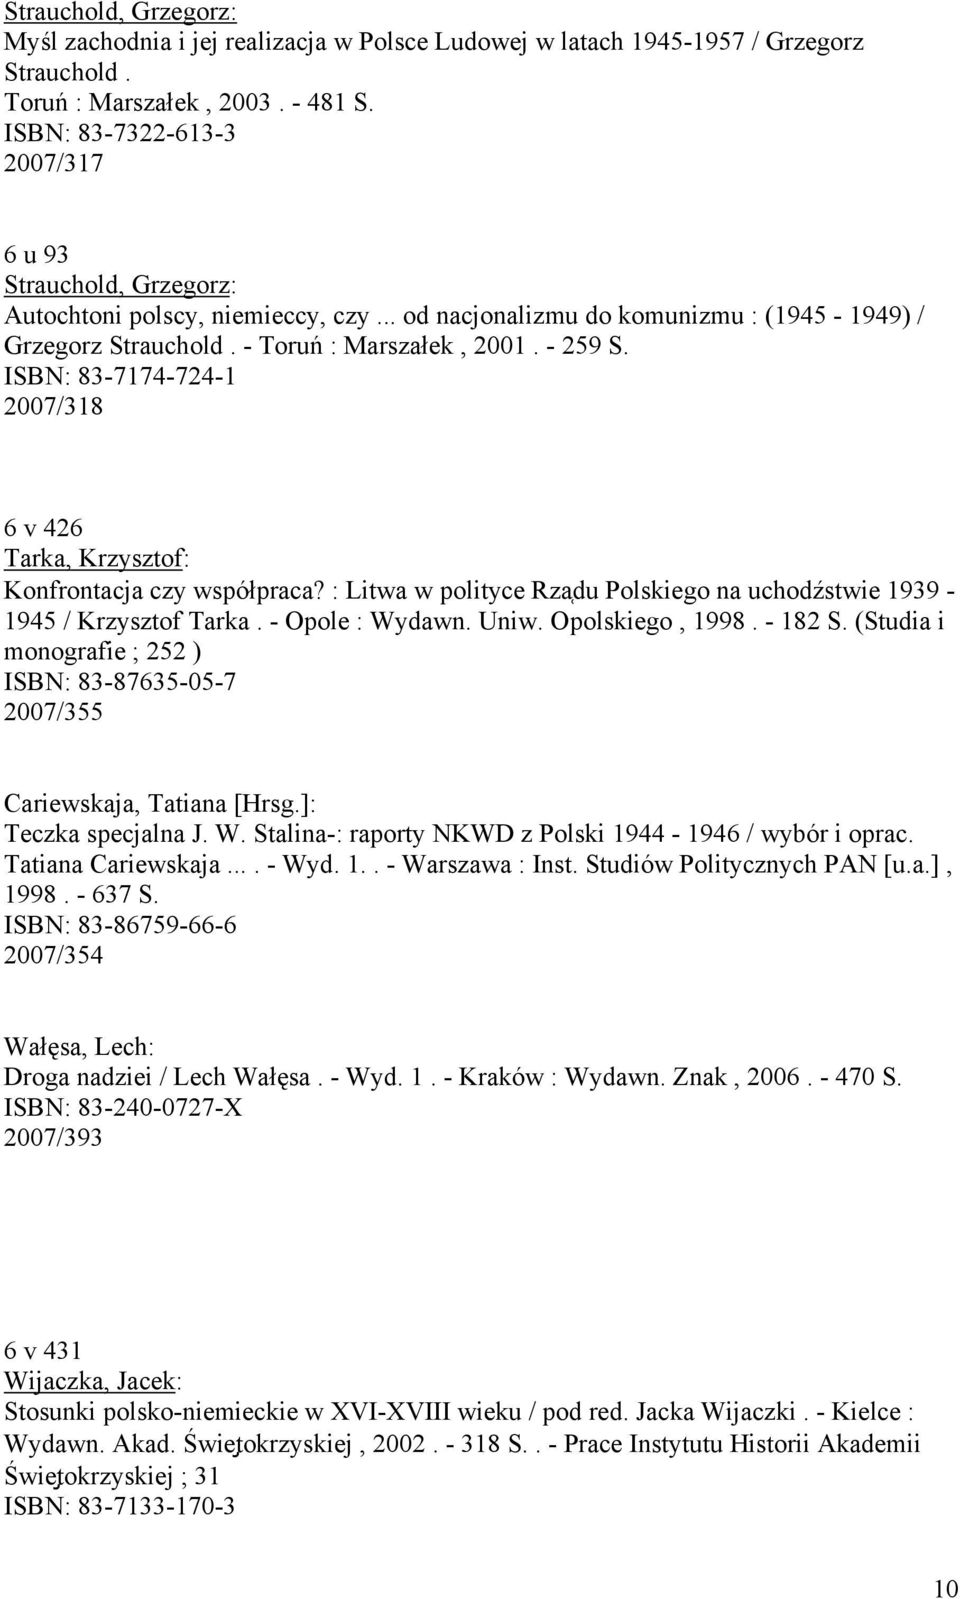 ISBN: 83-7174-724-1 2007/318 6 v 426 Tarka, Krzysztof: Konfrontacja czy współpraca? : Litwa w polityce Rza du Polskiego na uchodźstwie 1939-1945 / Krzysztof Tarka. - Opole : Wydawn. Uniw.